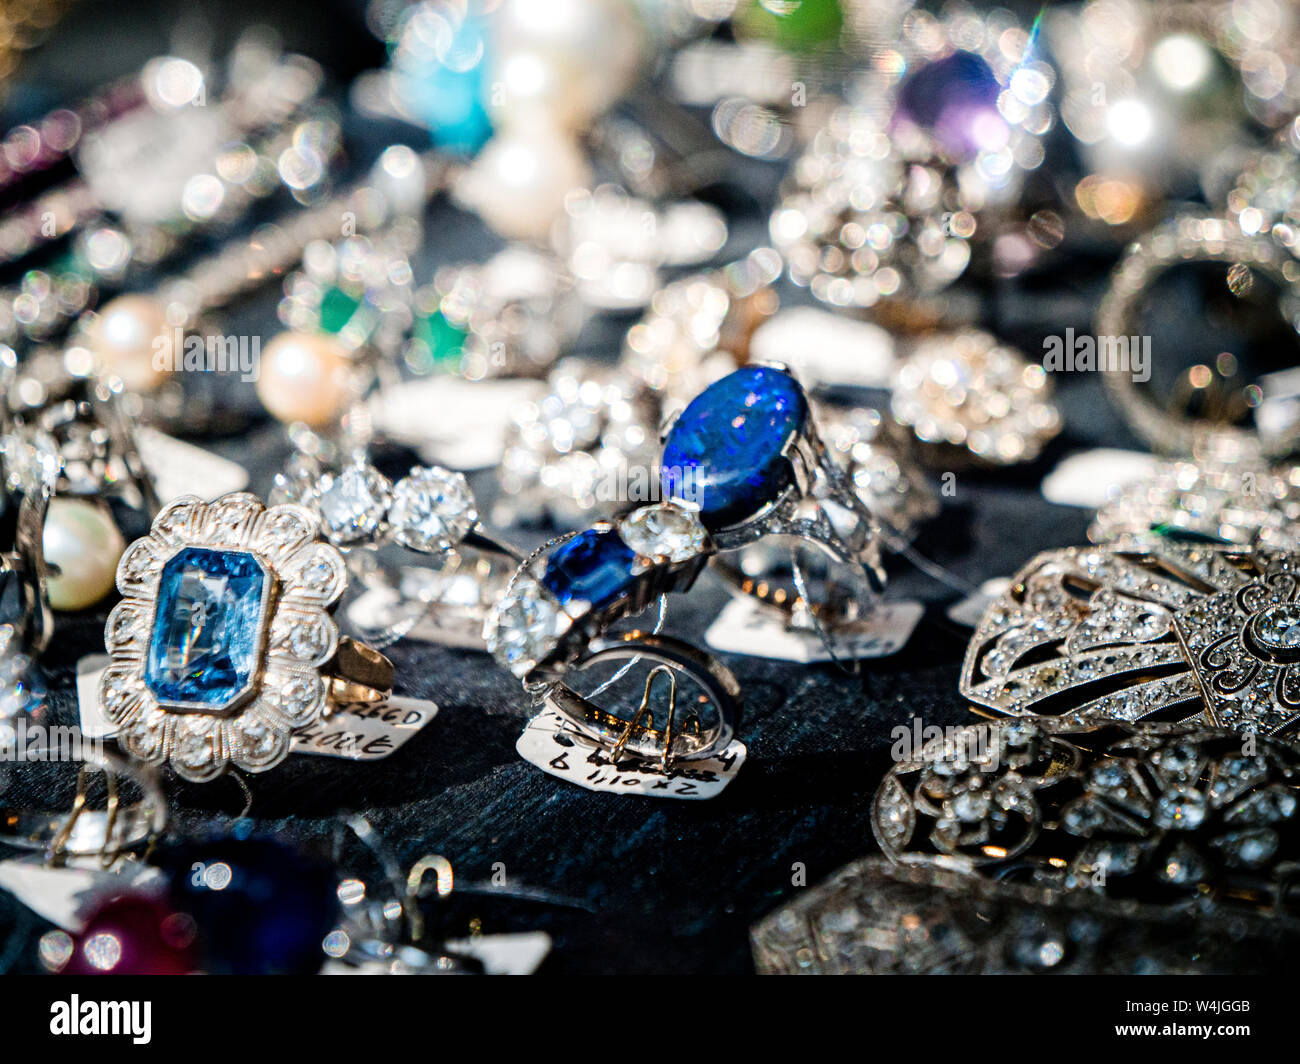 Detail der Schaukasten der Juwelier mit mehreren Ringe und Ohrringe mit Edel-  und Halbedelsteinen zum Verkauf als in Spanisch Fashion Store gesehen  Stockfotografie - Alamy